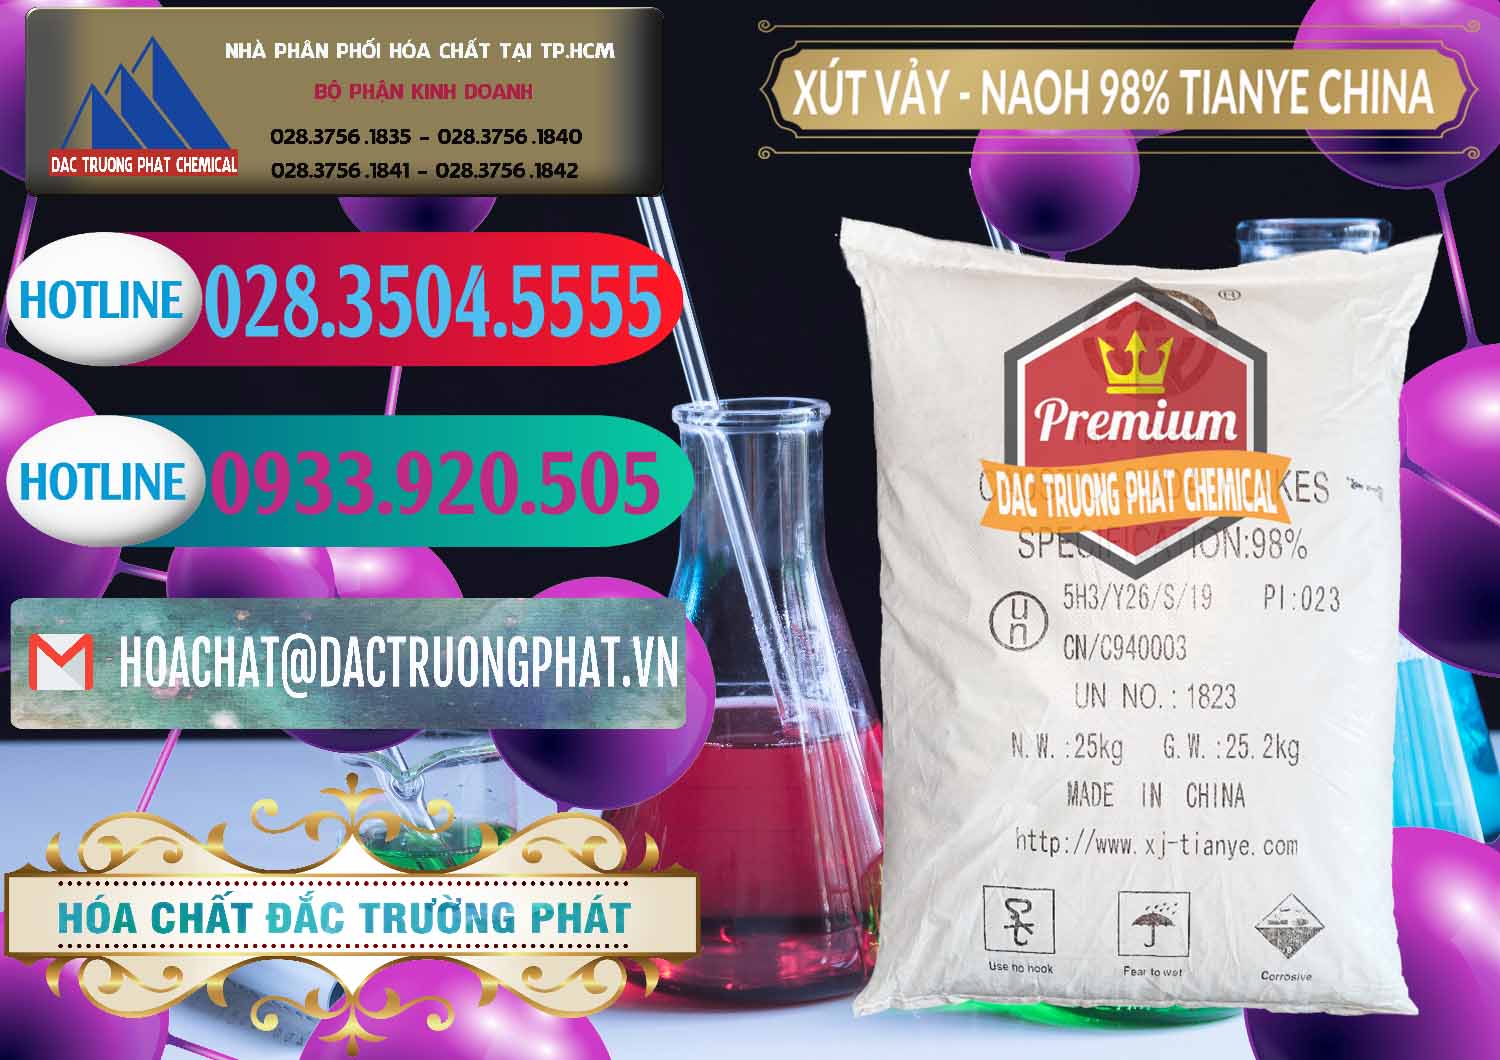 Cty nhập khẩu ( bán ) Xút Vảy - NaOH Vảy 98% Tianye Trung Quốc China - 0177 - Nơi chuyên bán _ phân phối hóa chất tại TP.HCM - truongphat.vn